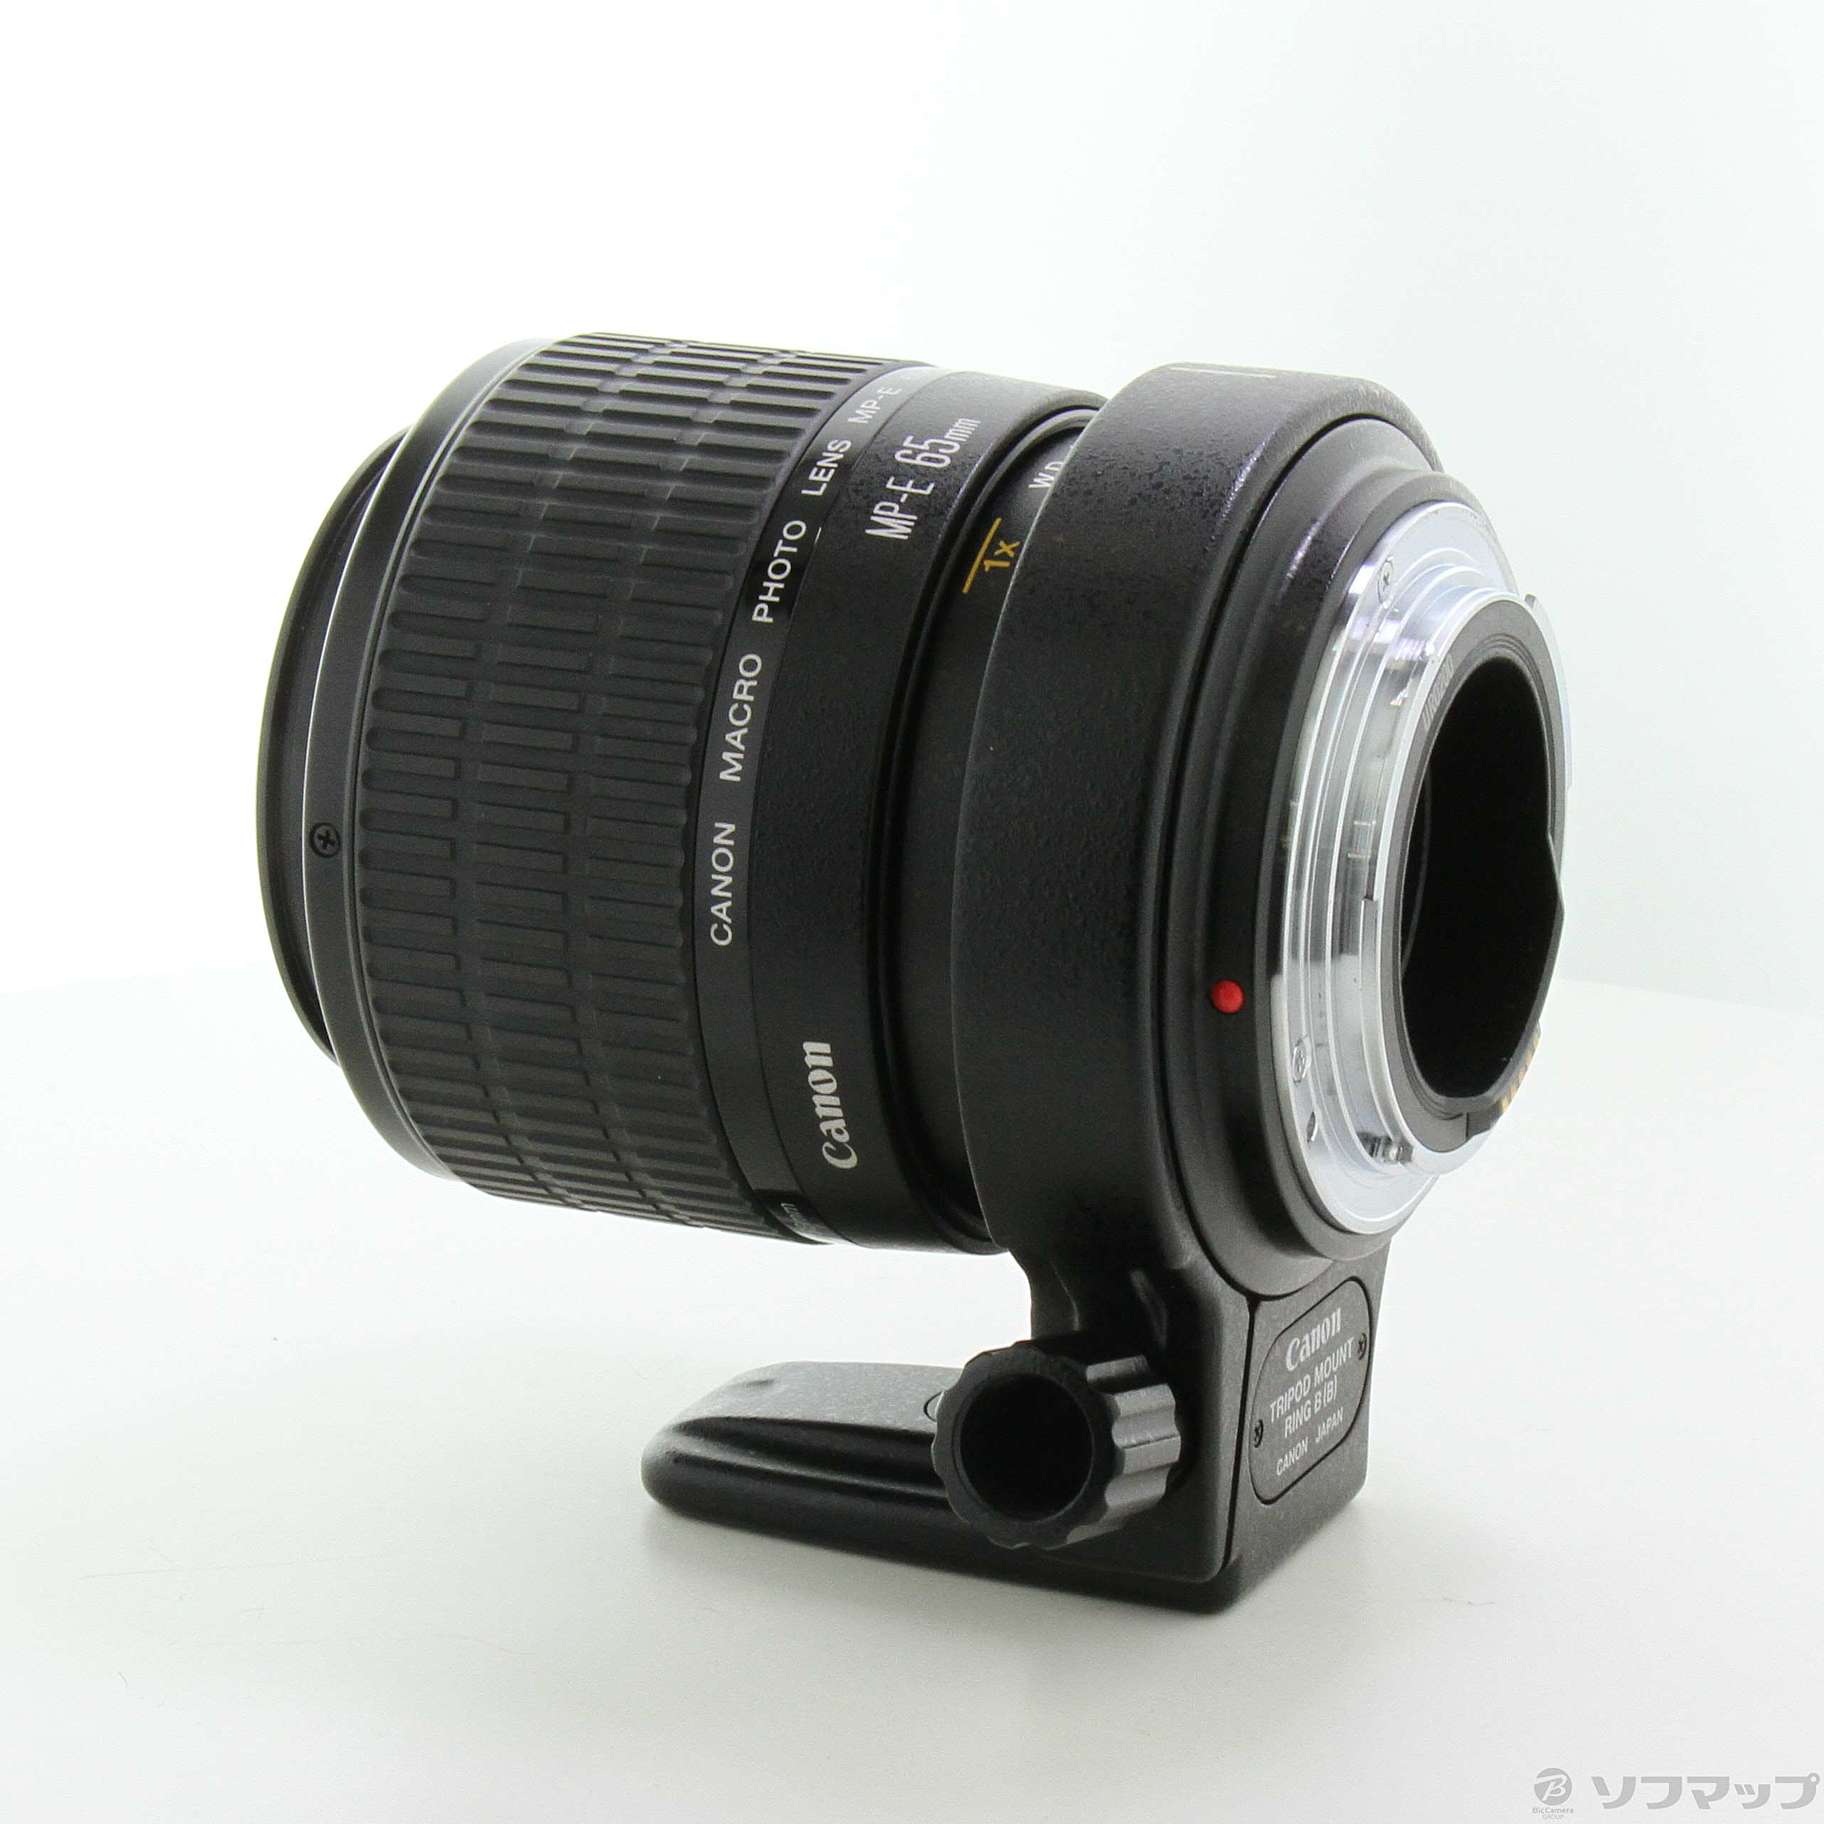 キヤノン Canon MP-E 65mm f2.8 1-5x www.krzysztofbialy.com